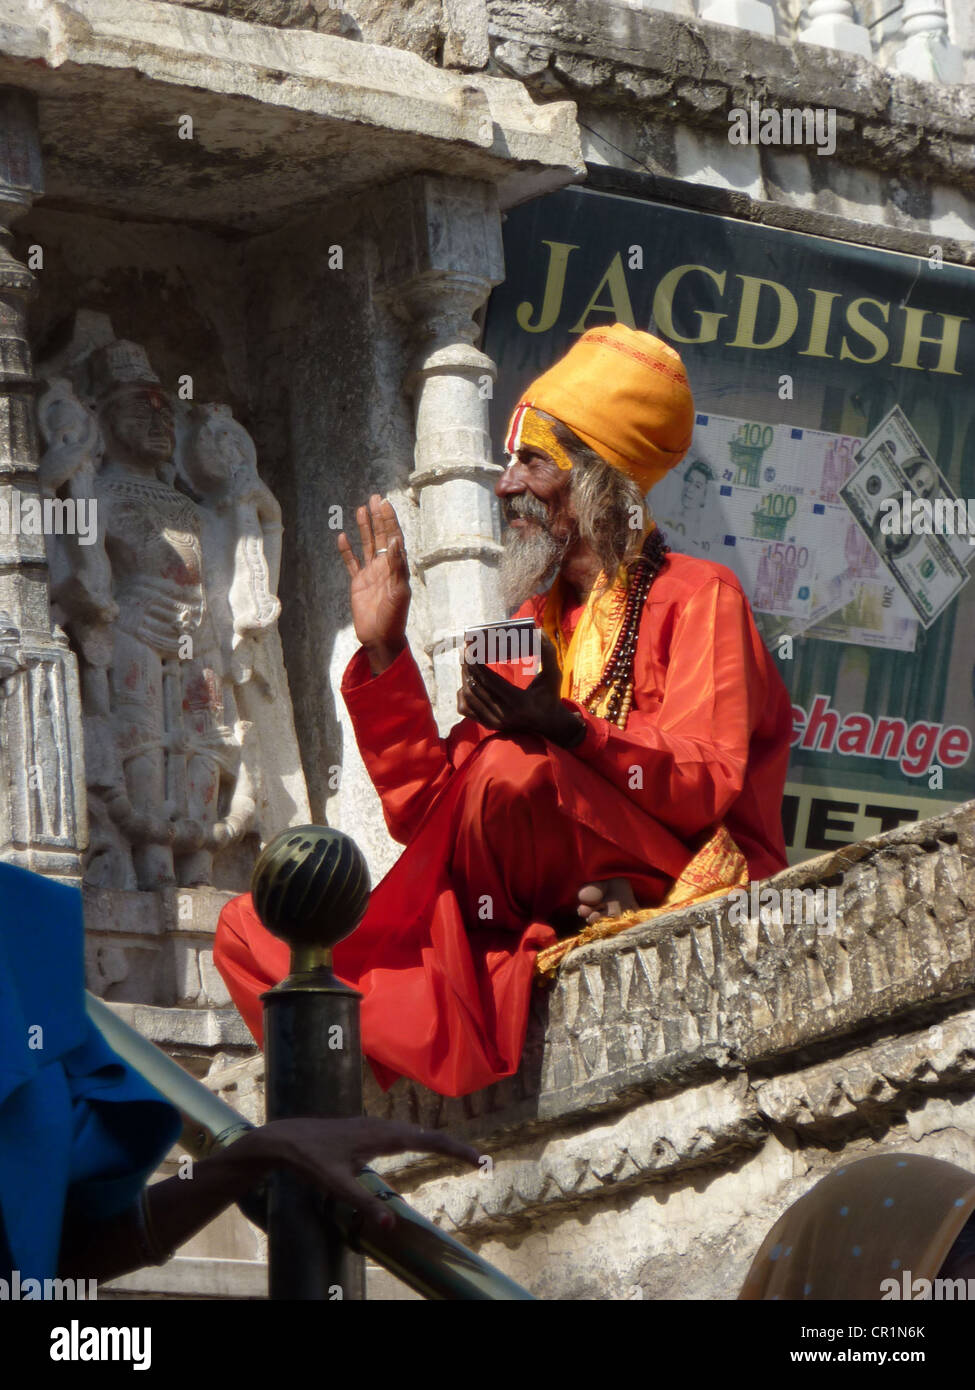 UDAIPUR, INDE - 2 déc -Sadhu hindou bénédictions donne à l'extérieur d'un temple le déc 2, 2009 dans Udaipur, Inde Banque D'Images